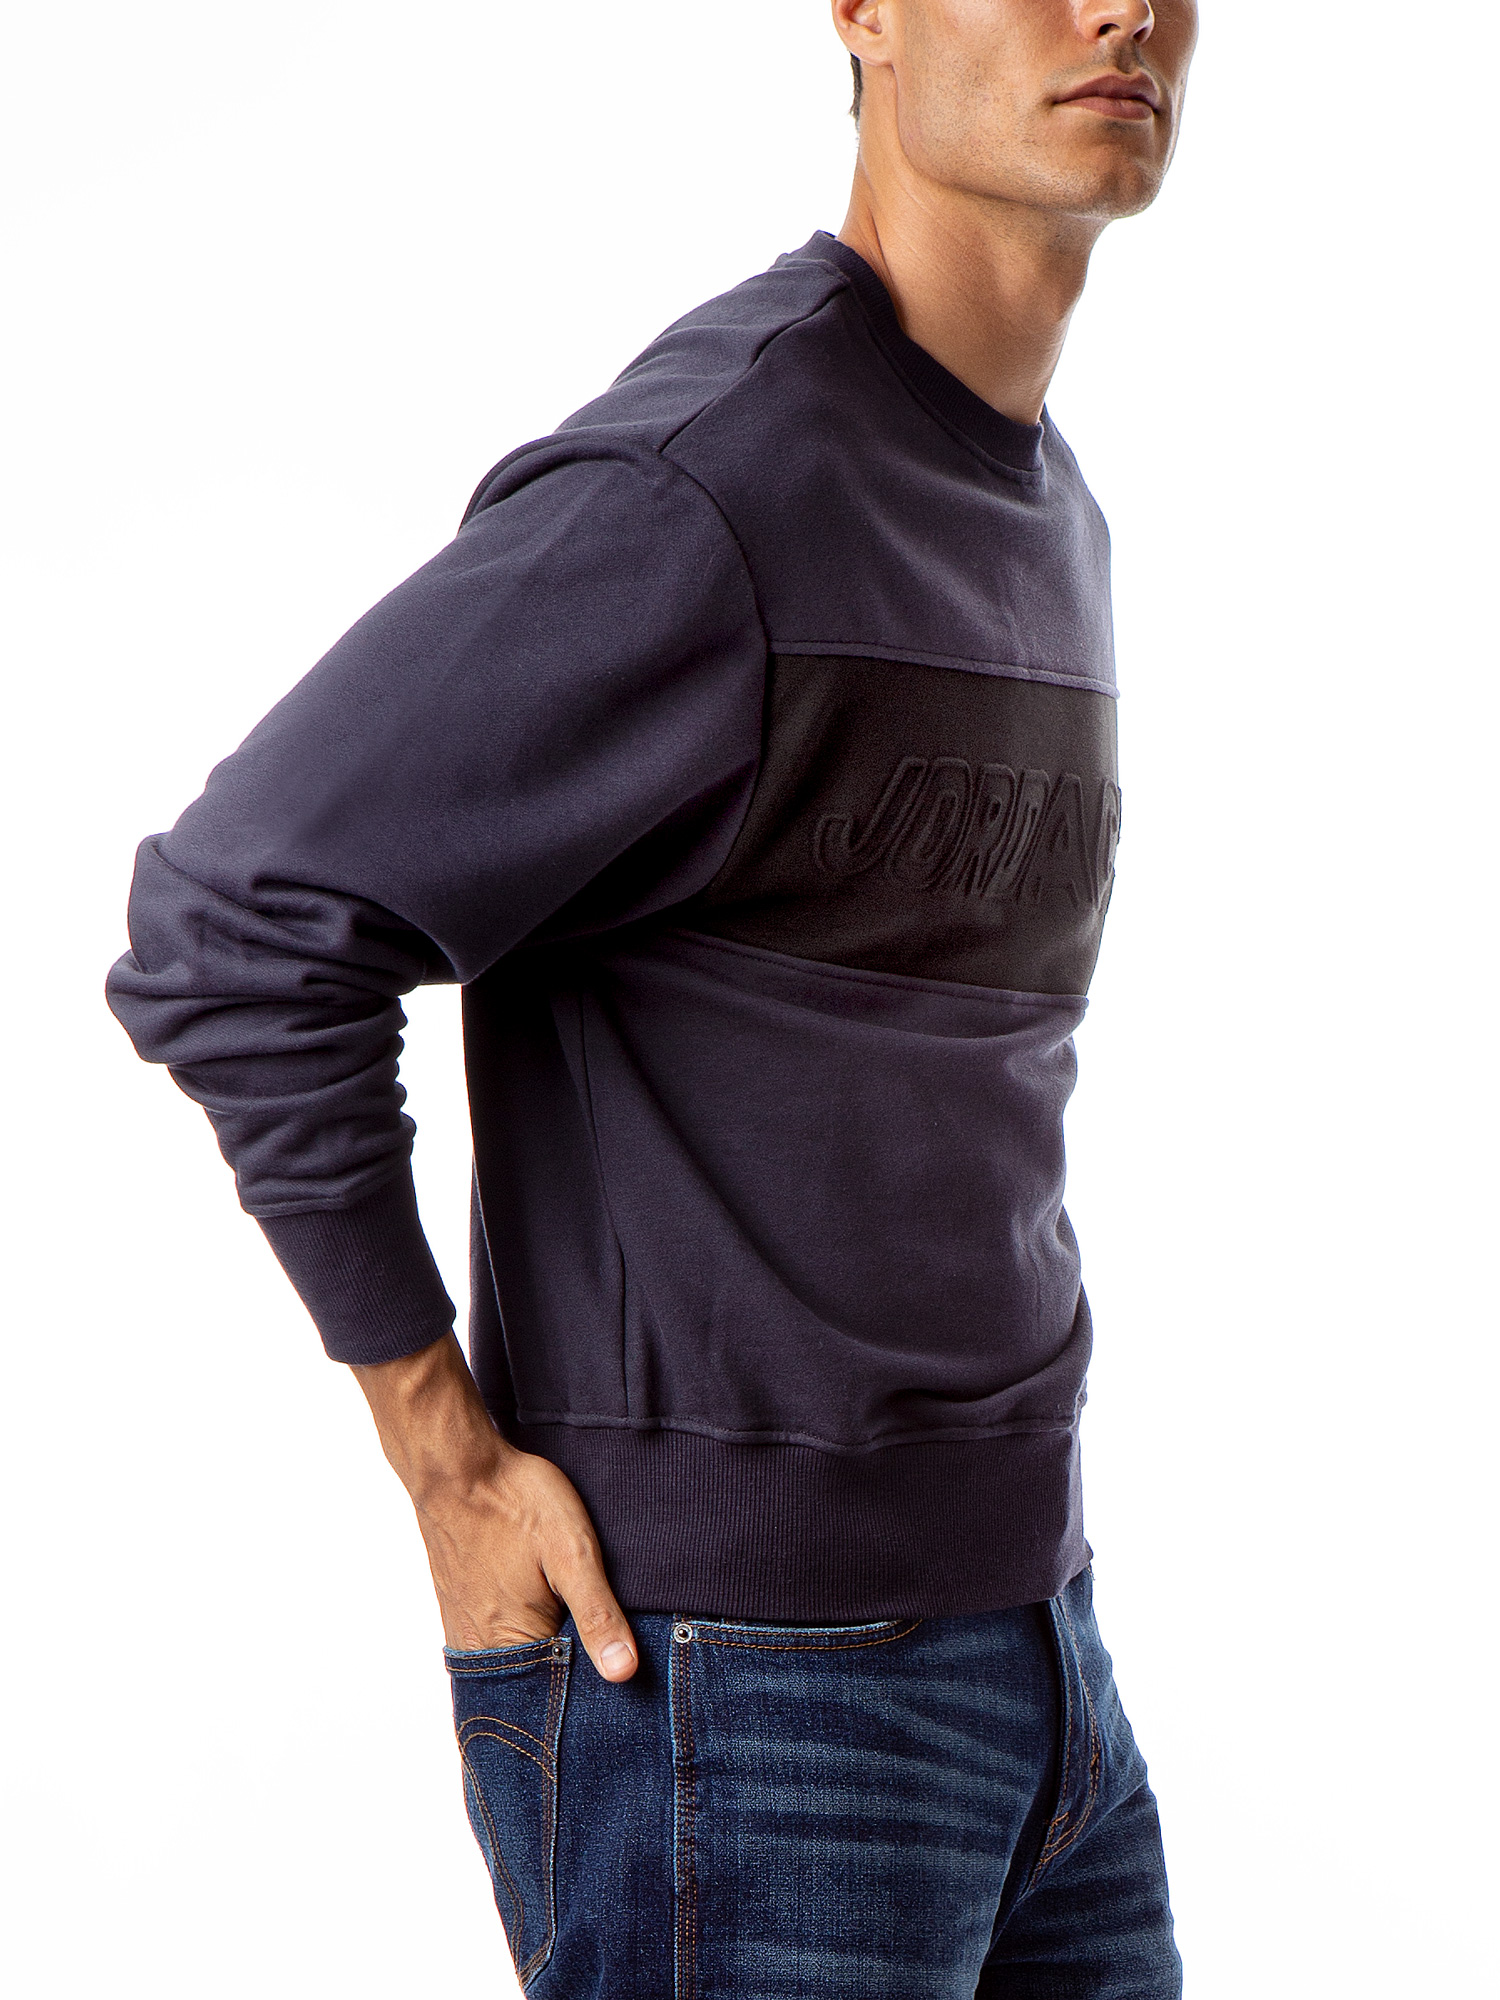 Jordache Vintage Men's Aaron Colorblocked Sweatshirt - image 3 of 5